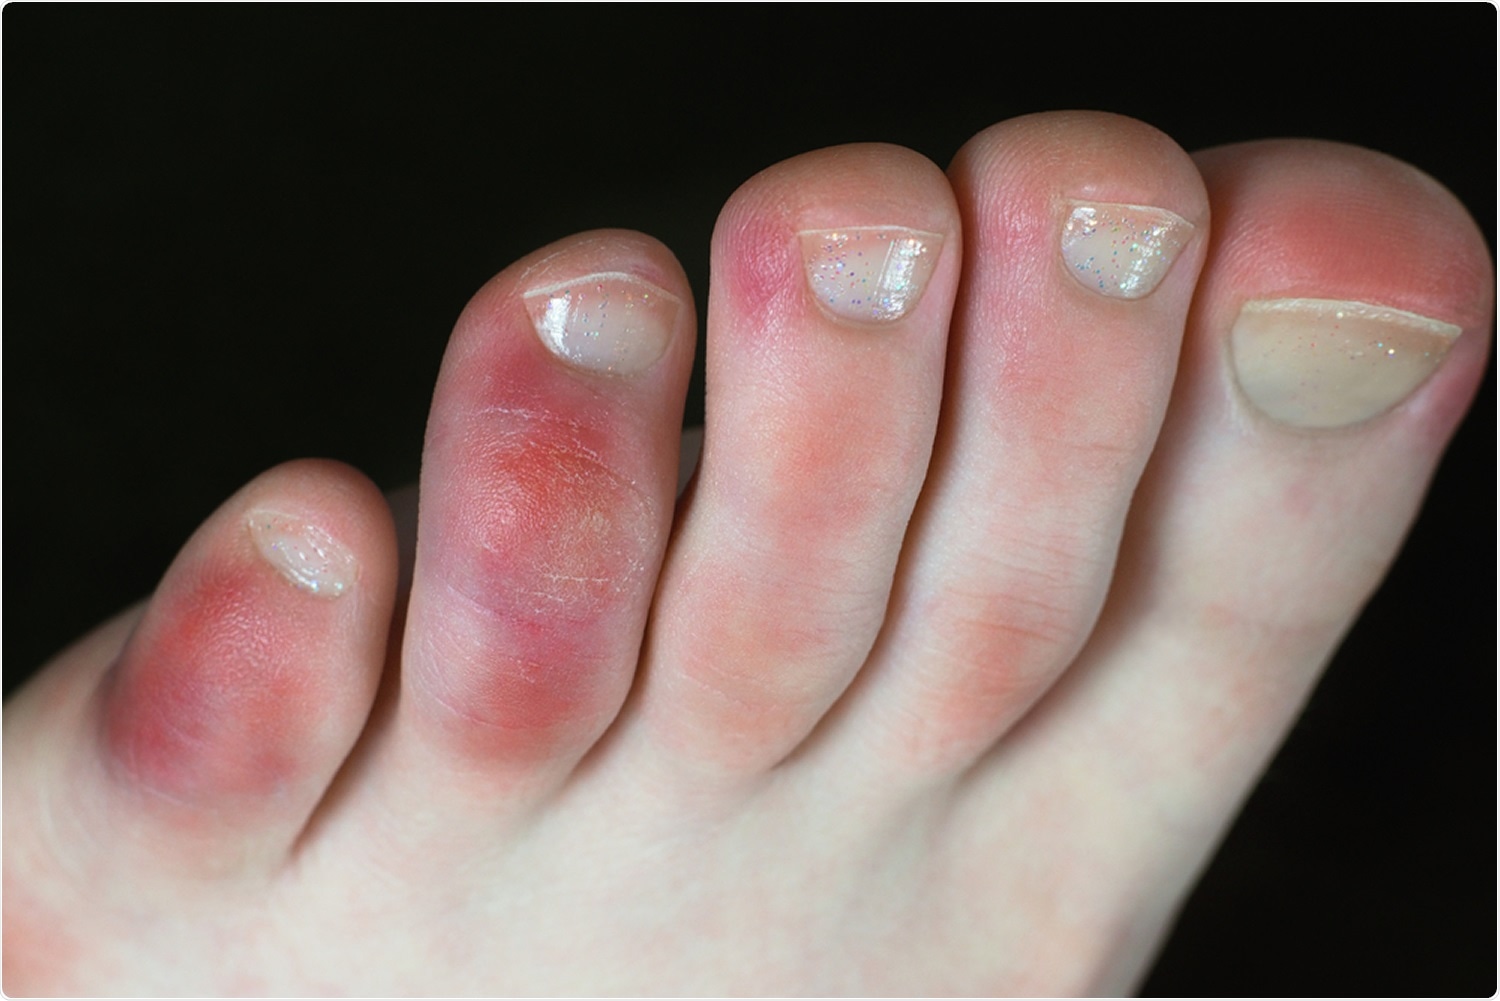 symptoms in the feet